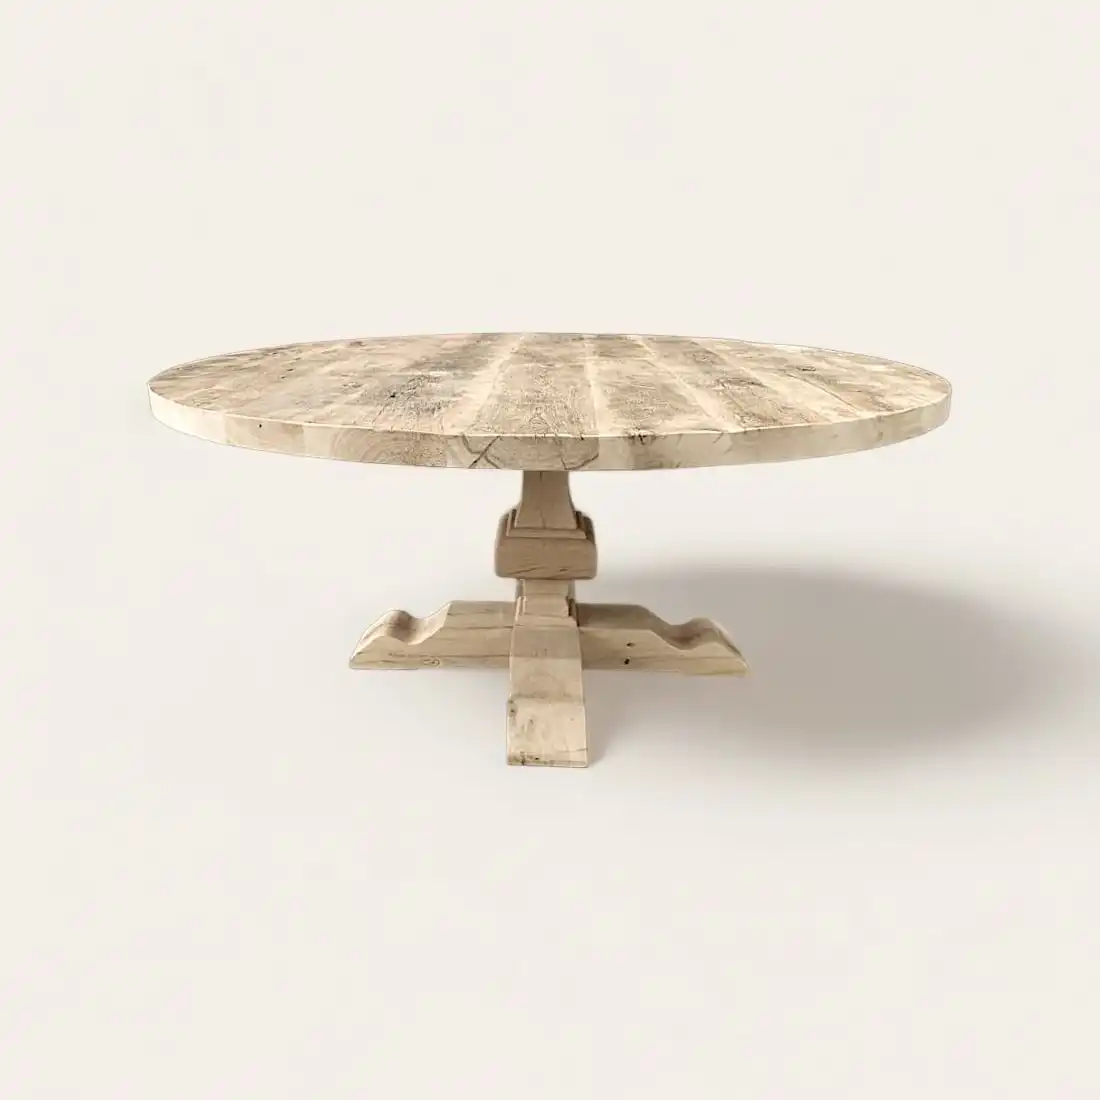  Une table ronde en vieux bois sur fond blanc. 